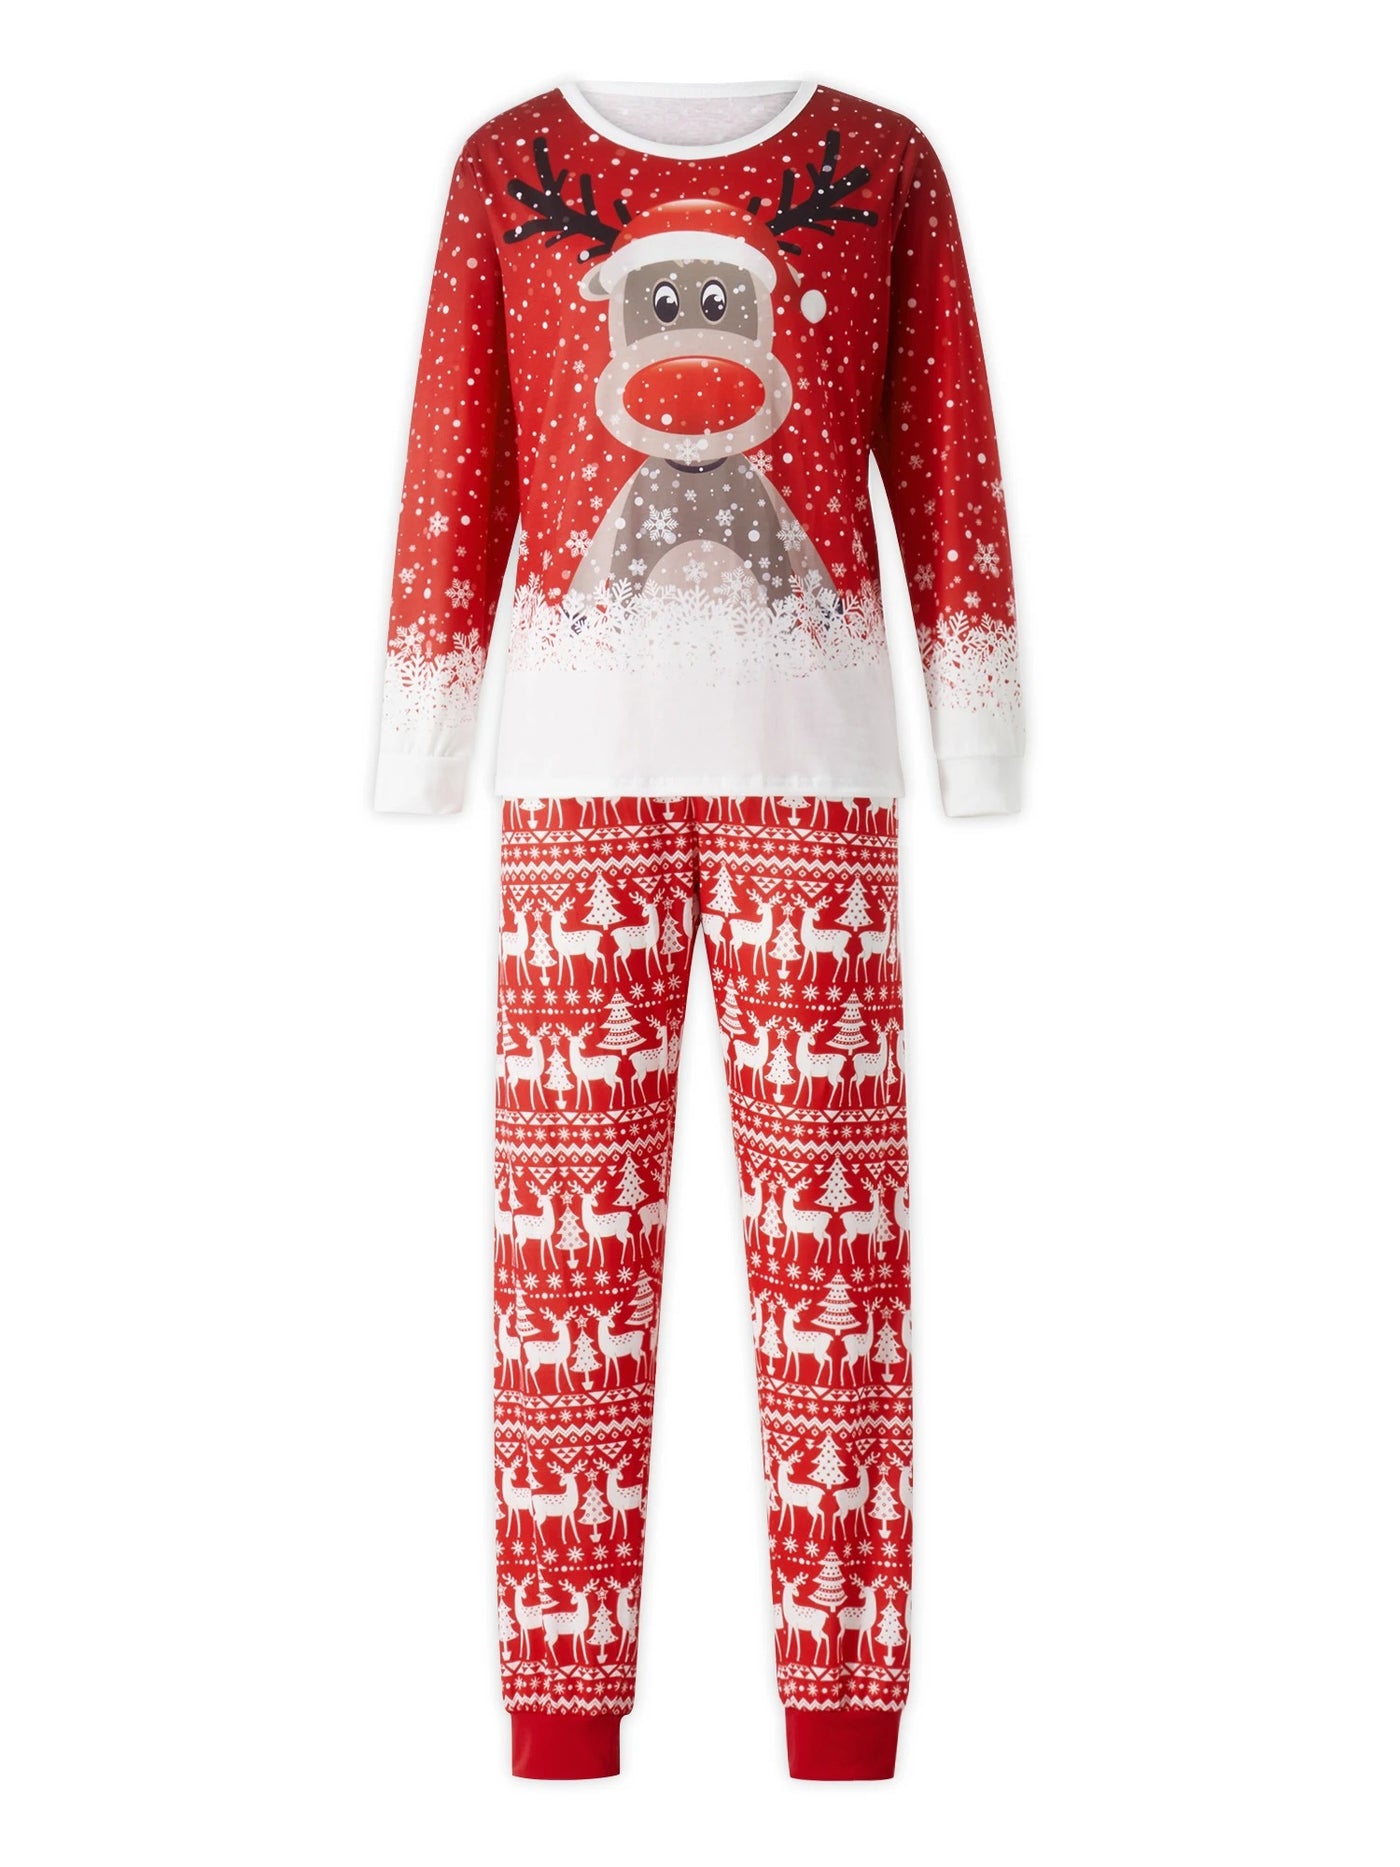 SyncStyle - Schneeflocke Passende Familie Weihnachten Pyjamas Set